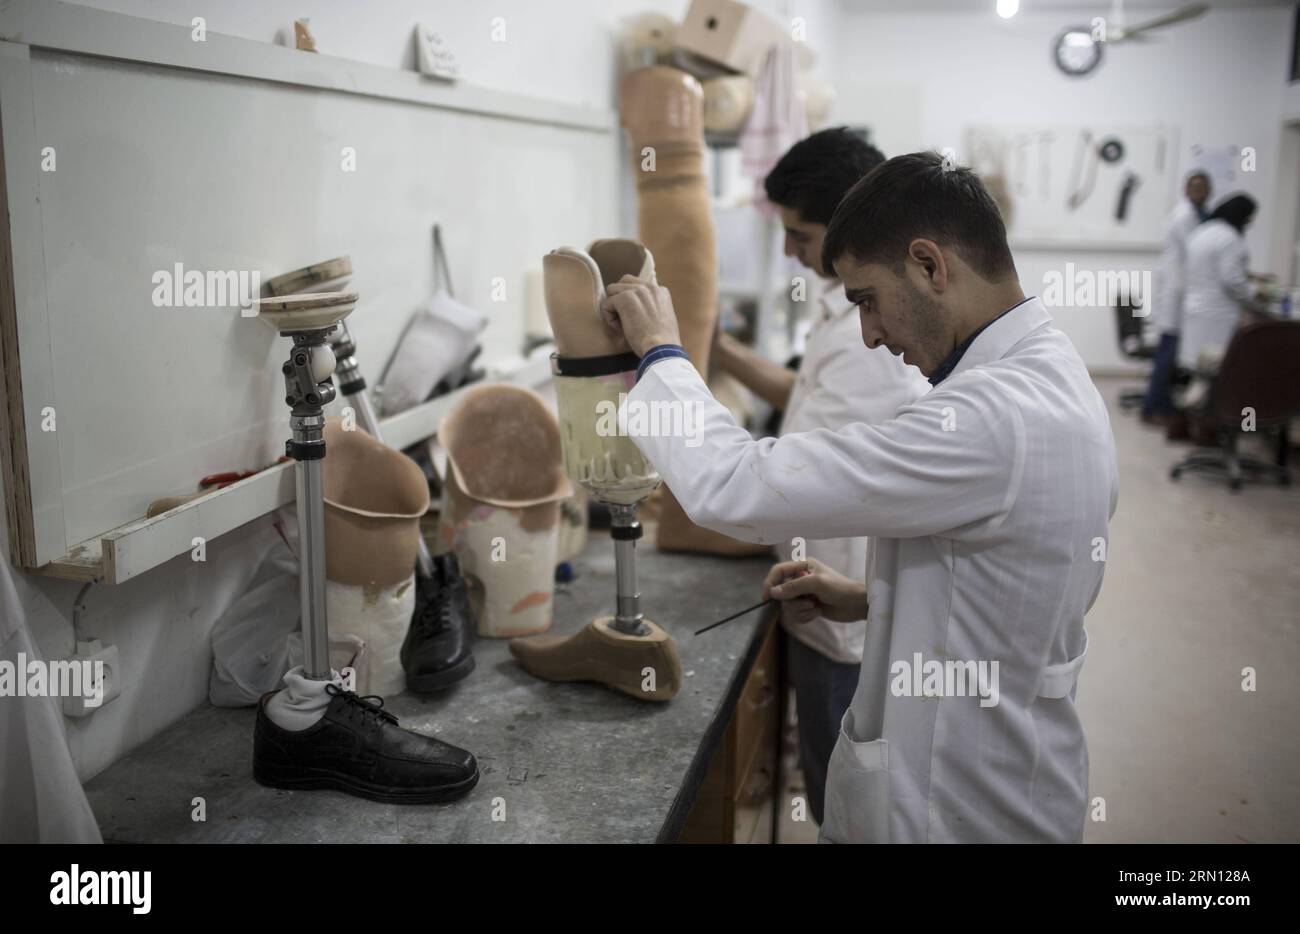 Un membro dello staff palestinese prepara una gamba protesica al Centro Artificial Limits and Polio Centre (ALPC) di Gaza il 30 novembre 2014. L'ALPC è stato istituito nel 1974 e opera con il supporto tecnico della Croce Rossa Internazionale. E' l'unico centro del suo genere nella Striscia di Gaza che fornisce servizi protesici e ortotici gratuiti. ) MIDEAST-GAZA-ARTIFICIAL-LIMMBS WissamxNassar PUBLICATIONxNOTxINxCHN un membro dello staff PALESTINESE prepara una gamba PRESSO IL Centro Artificial Limbs and Polio di Gaza nella città di Gaza IL 30 2014 novembre, The What istituito nel 1974 e opera con il supporto tecnico Foto Stock